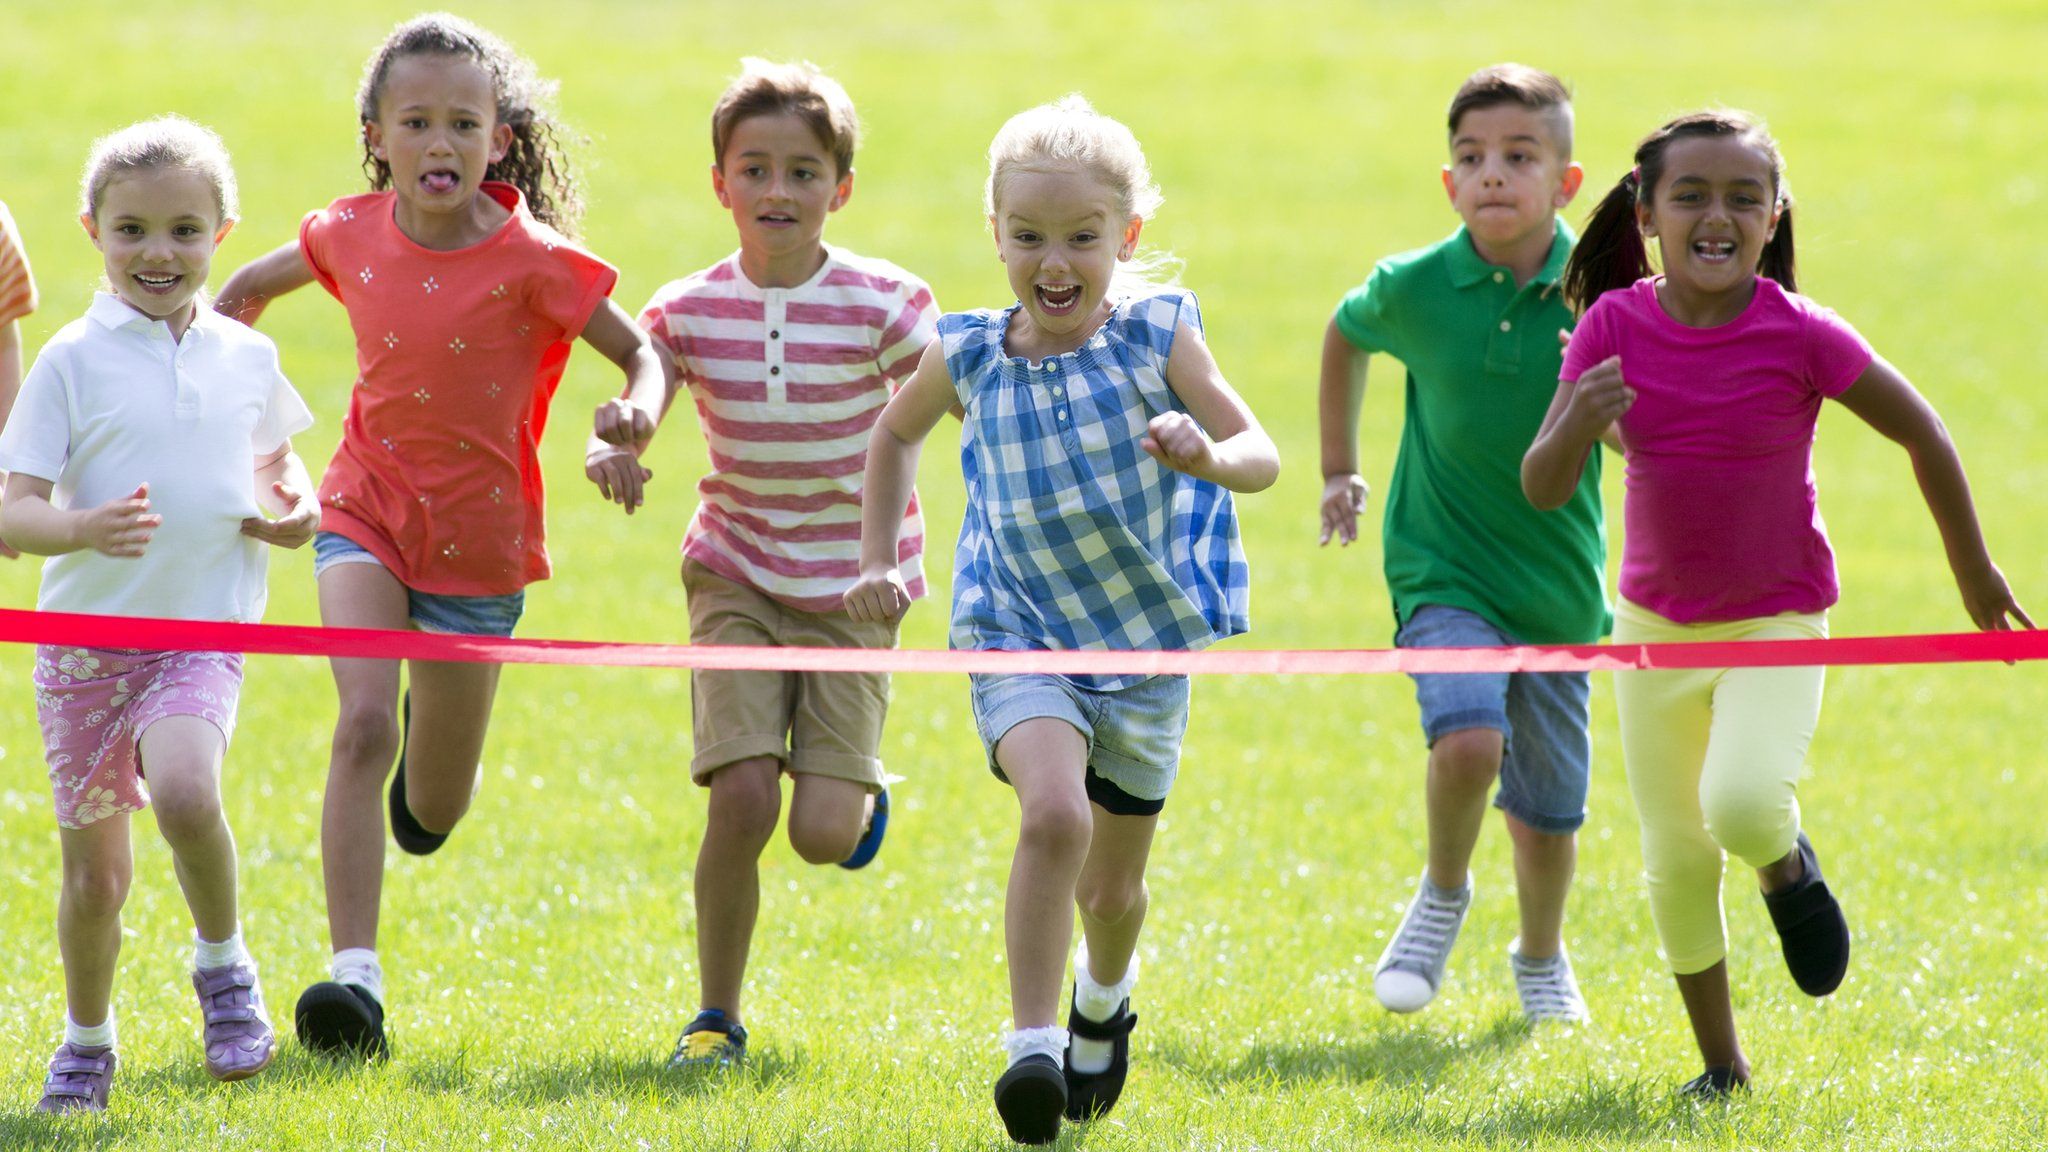 Children running a race